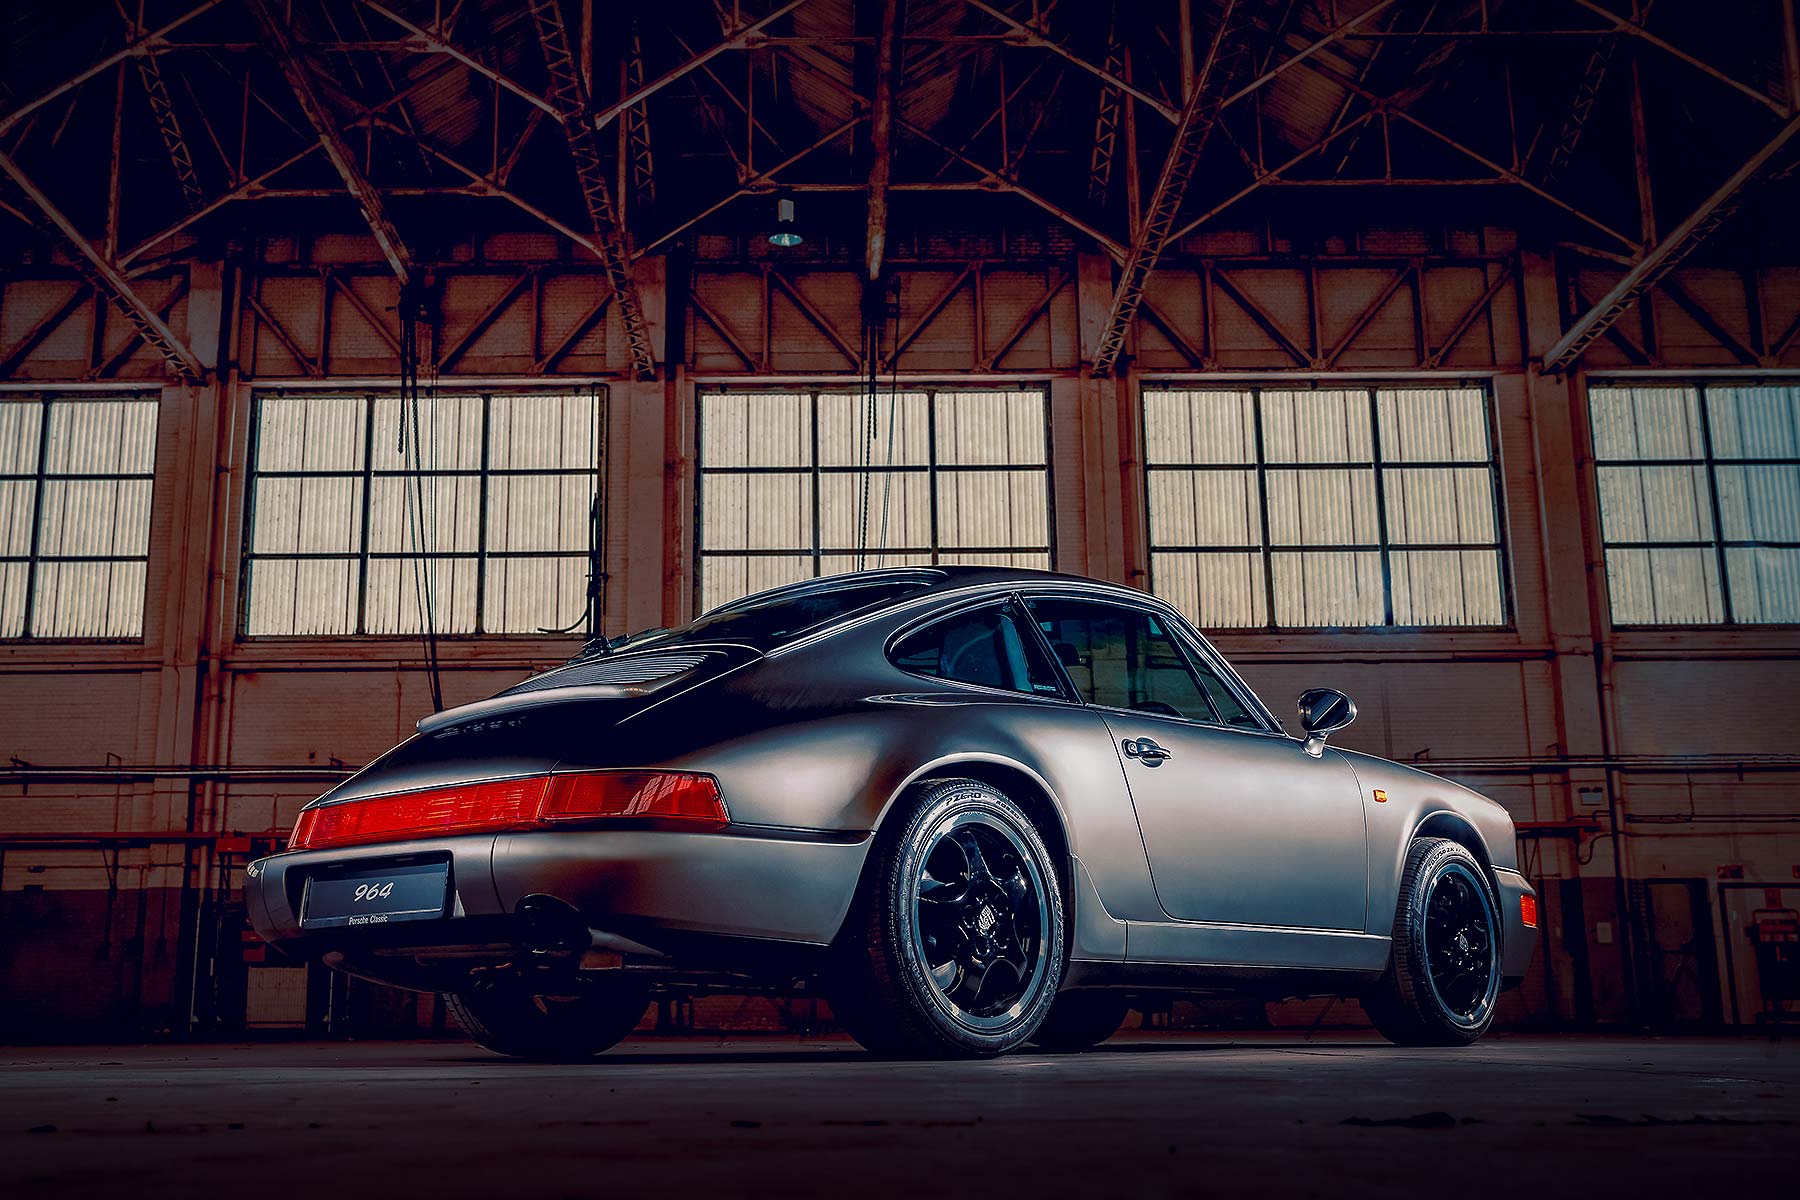 Porsche restorations at the NEC Classic